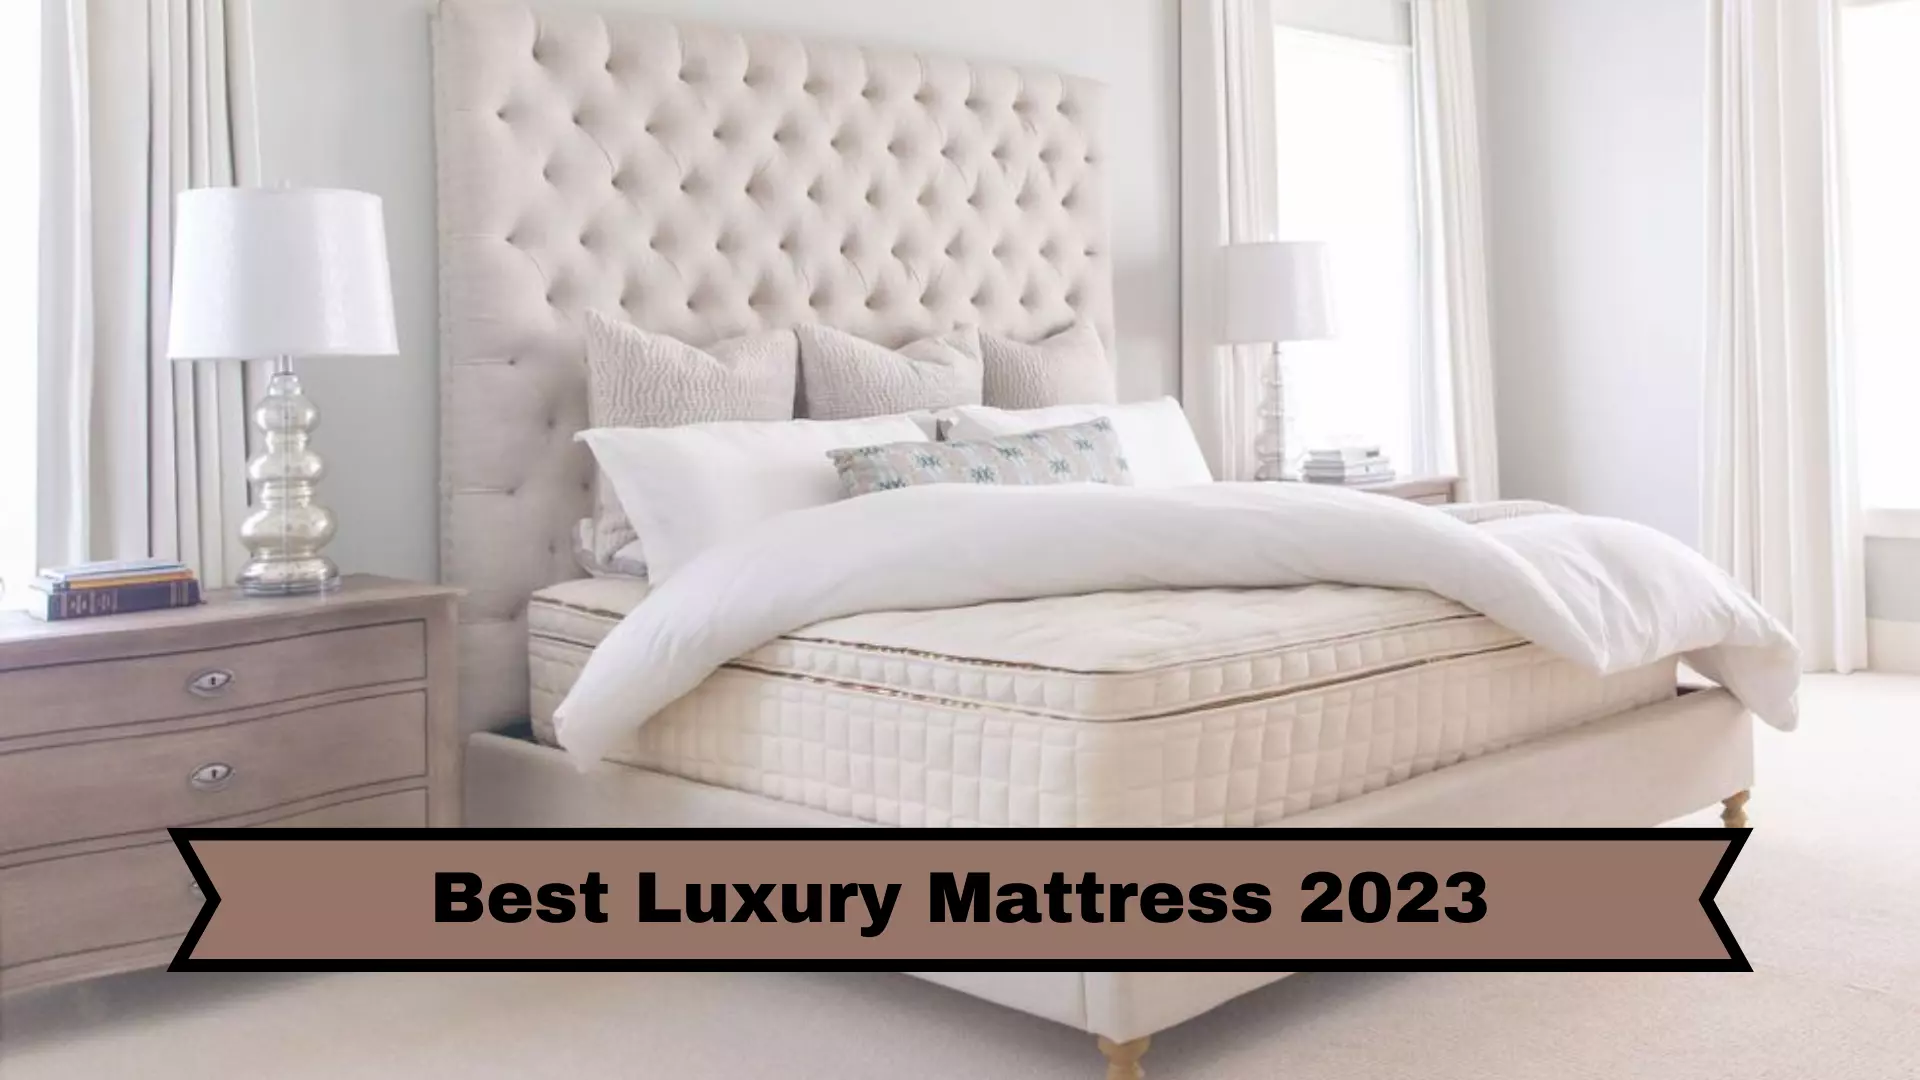 The Best Luxury Mattress 2023